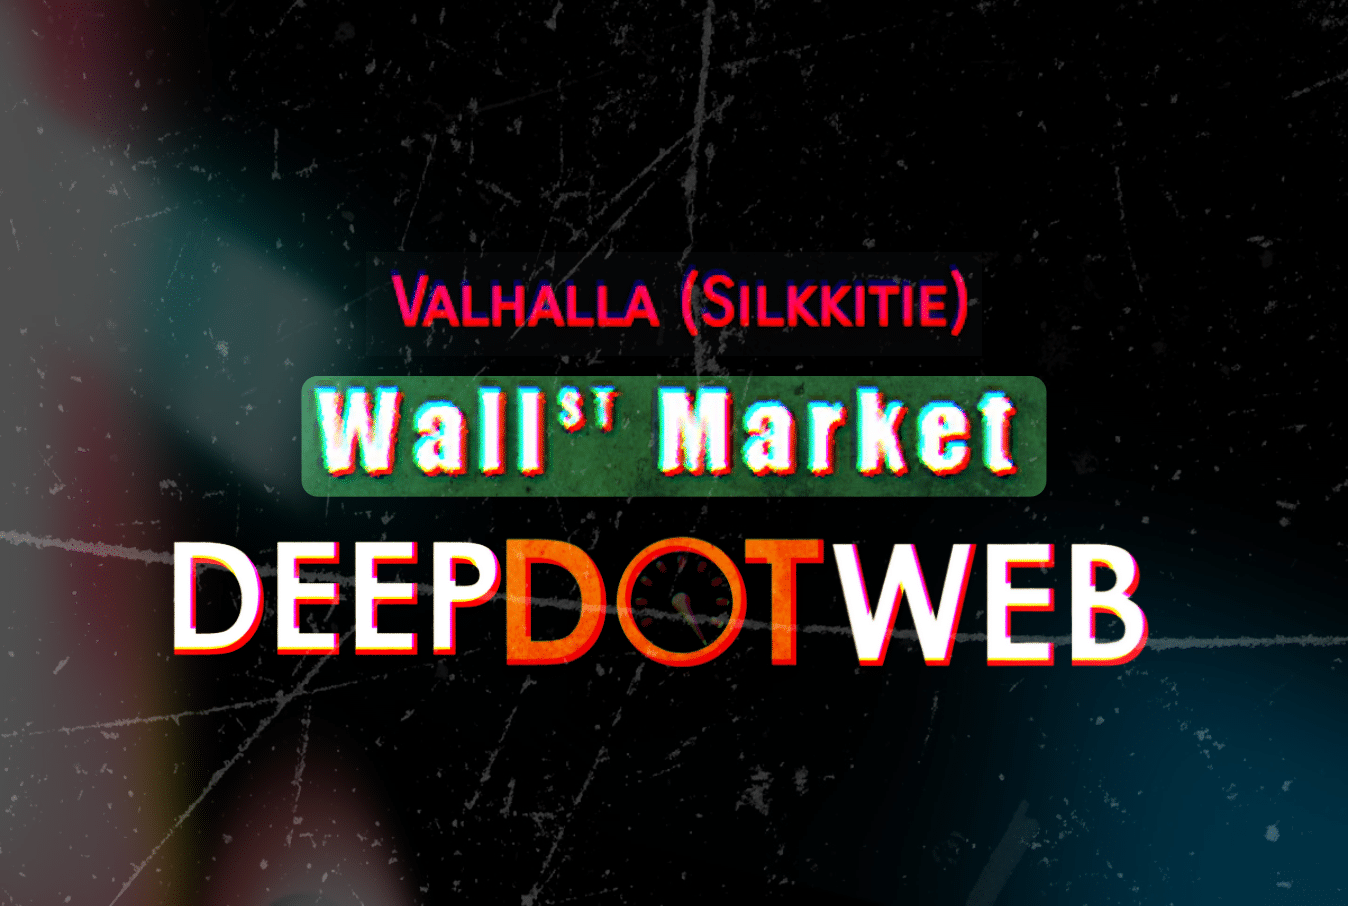 Wallstreet Market Darknet